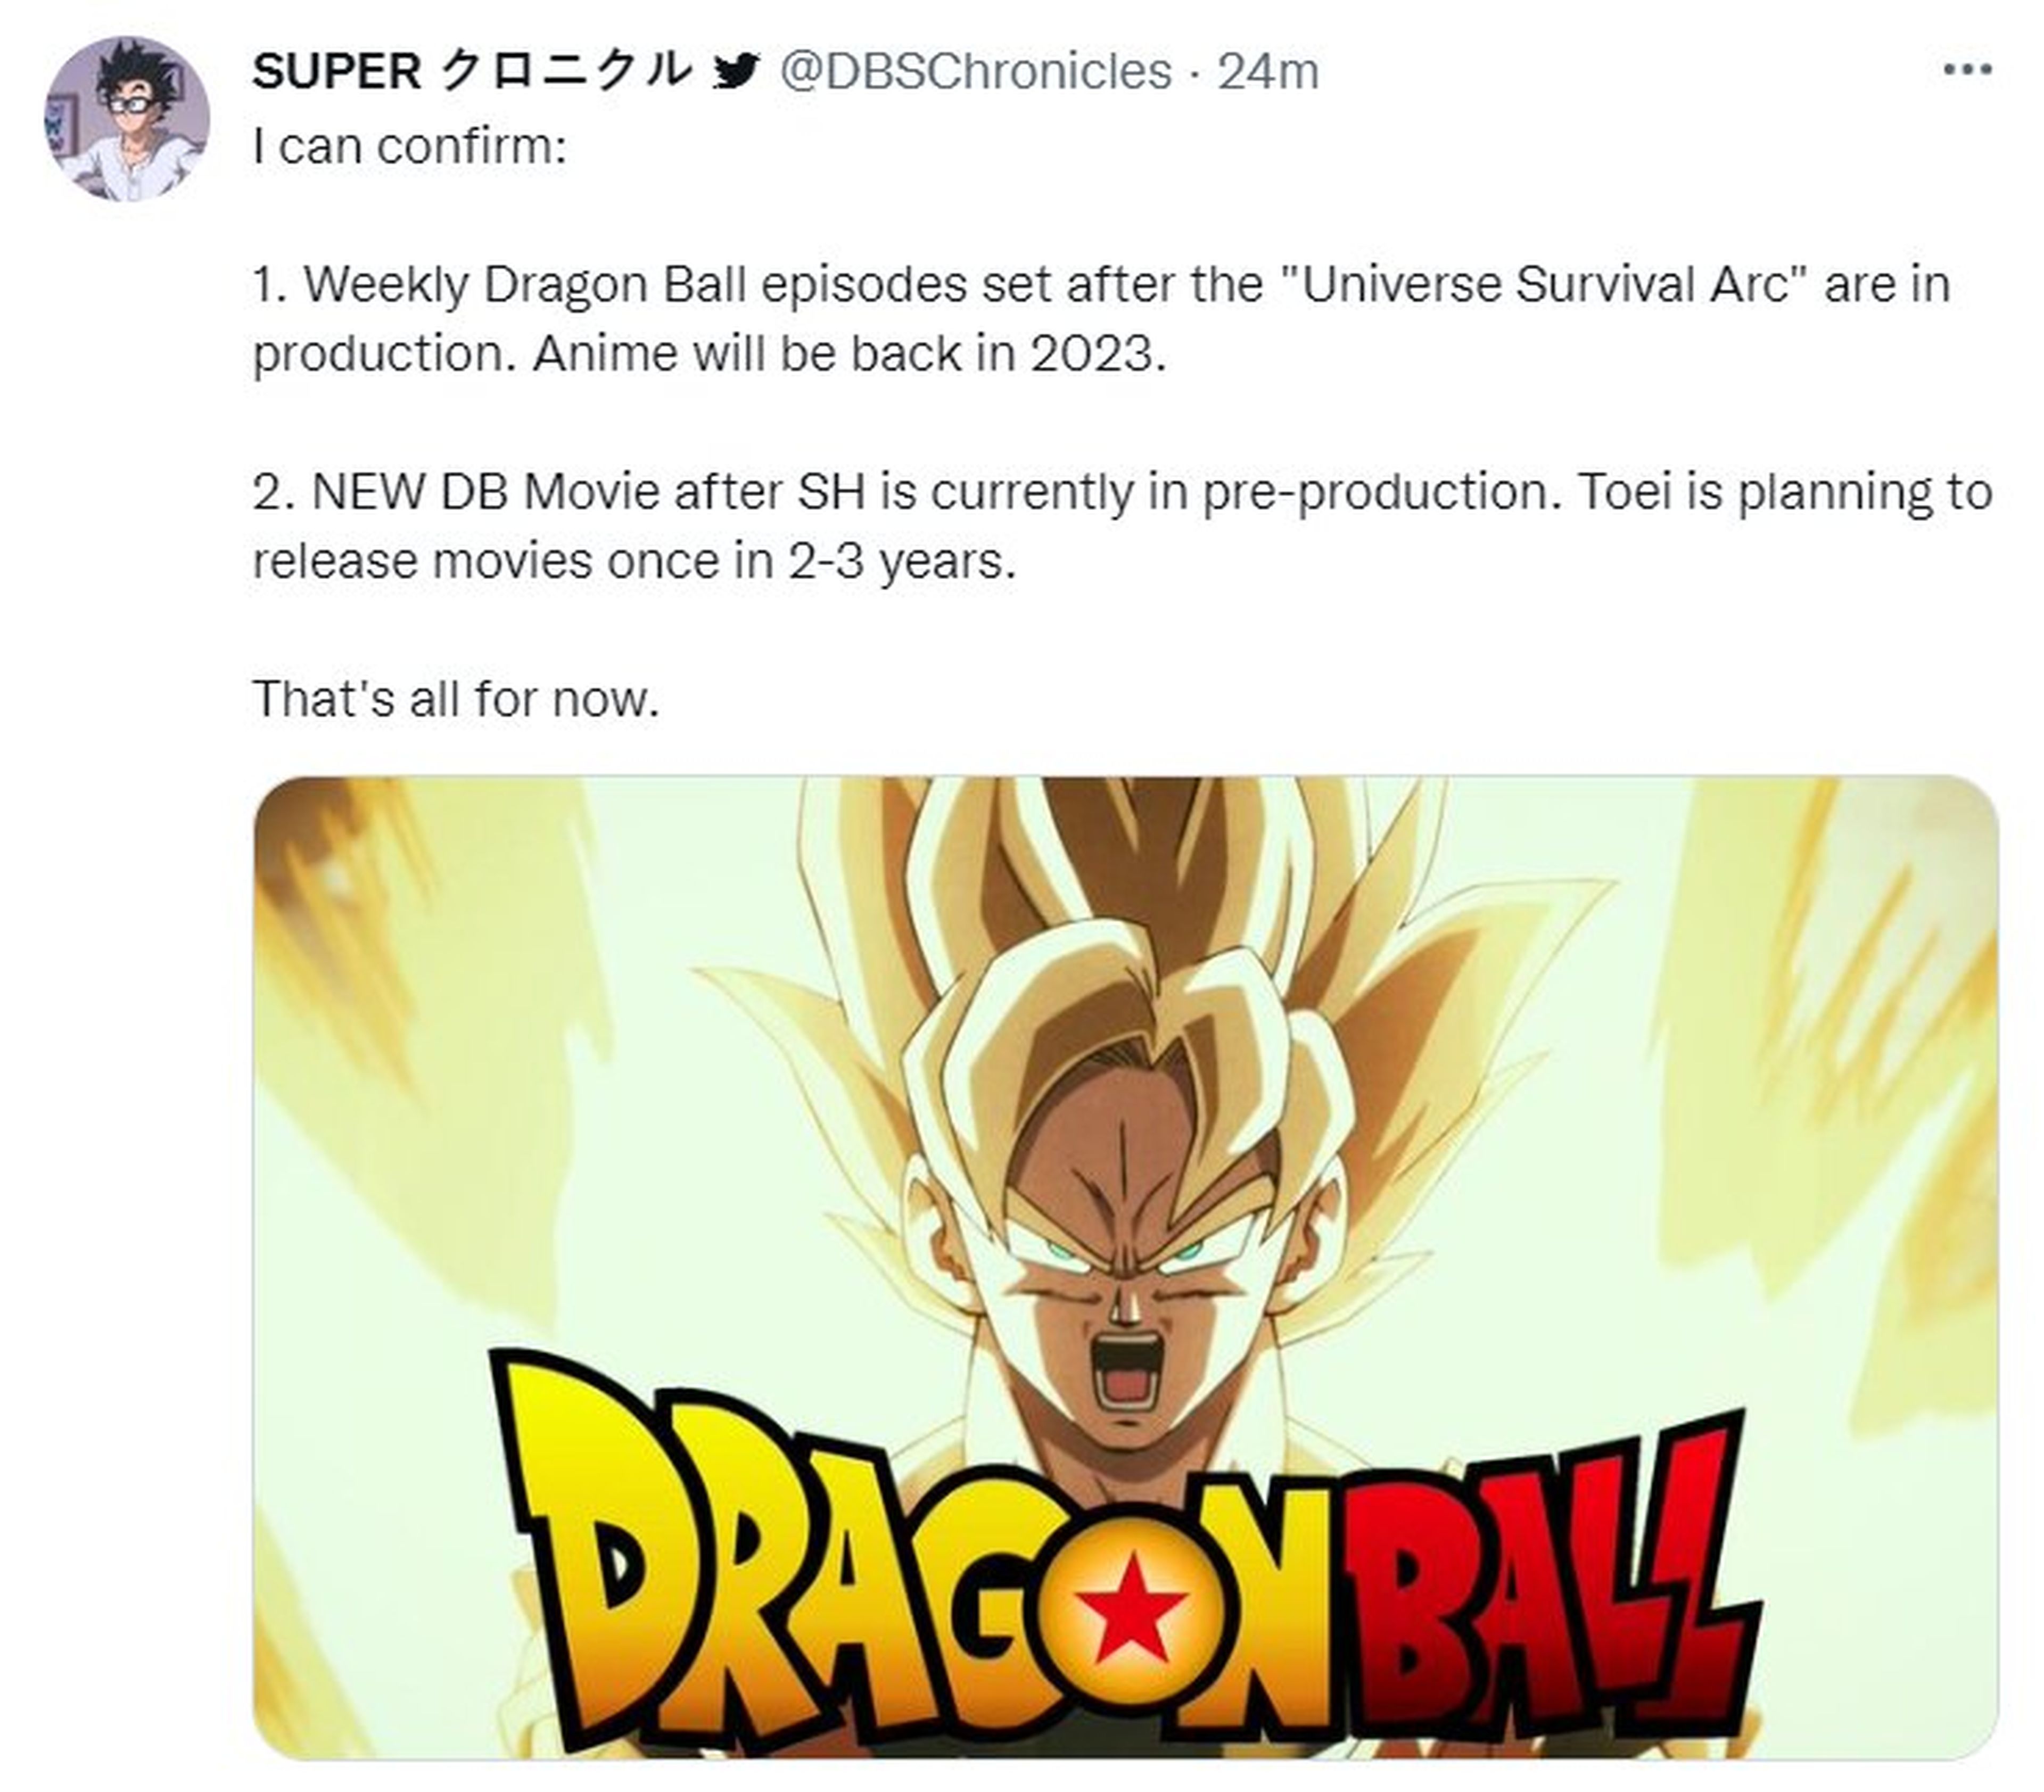 Dragon Ball Super - La serie anime volvería el año que viene y Toei Animation tendría planeado el lanzamiento de películas cada 2 o 3 años